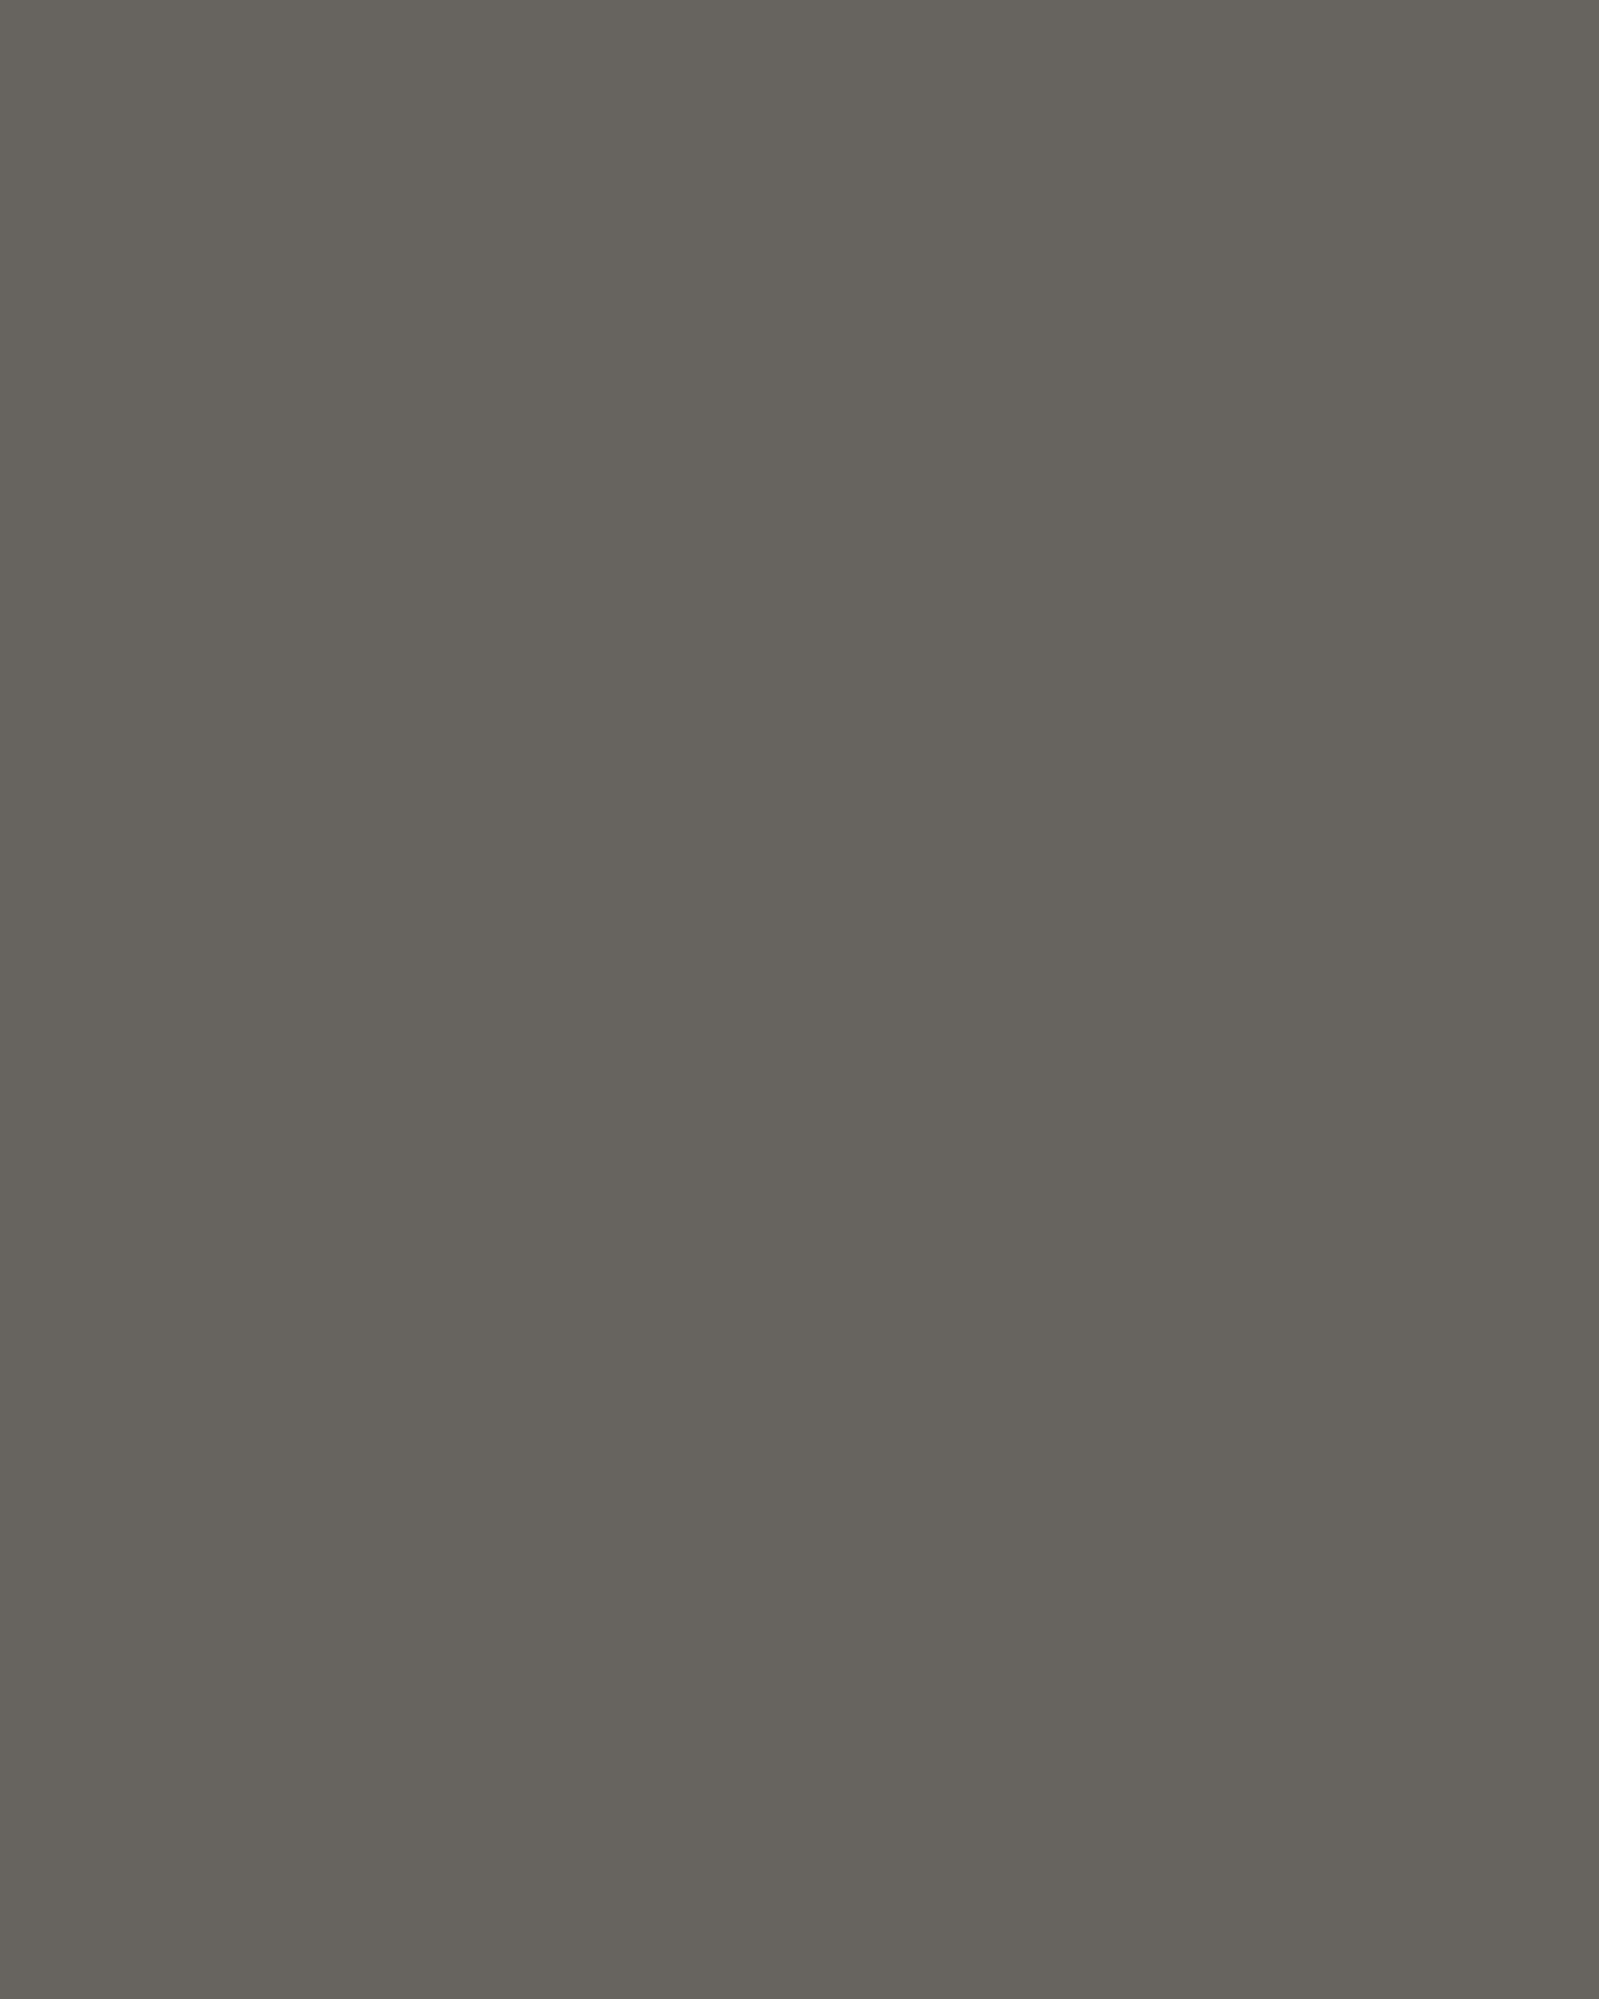 Рубен Гевондян «Звездный час» (фрагмент). 1960. Удмуртский республиканский музей изобразительных искусств, Ижевск, Удмуртская Республика. Выставка «Закат в сто сорок солнц», Дом культуры «ГЭС‑2», Москва